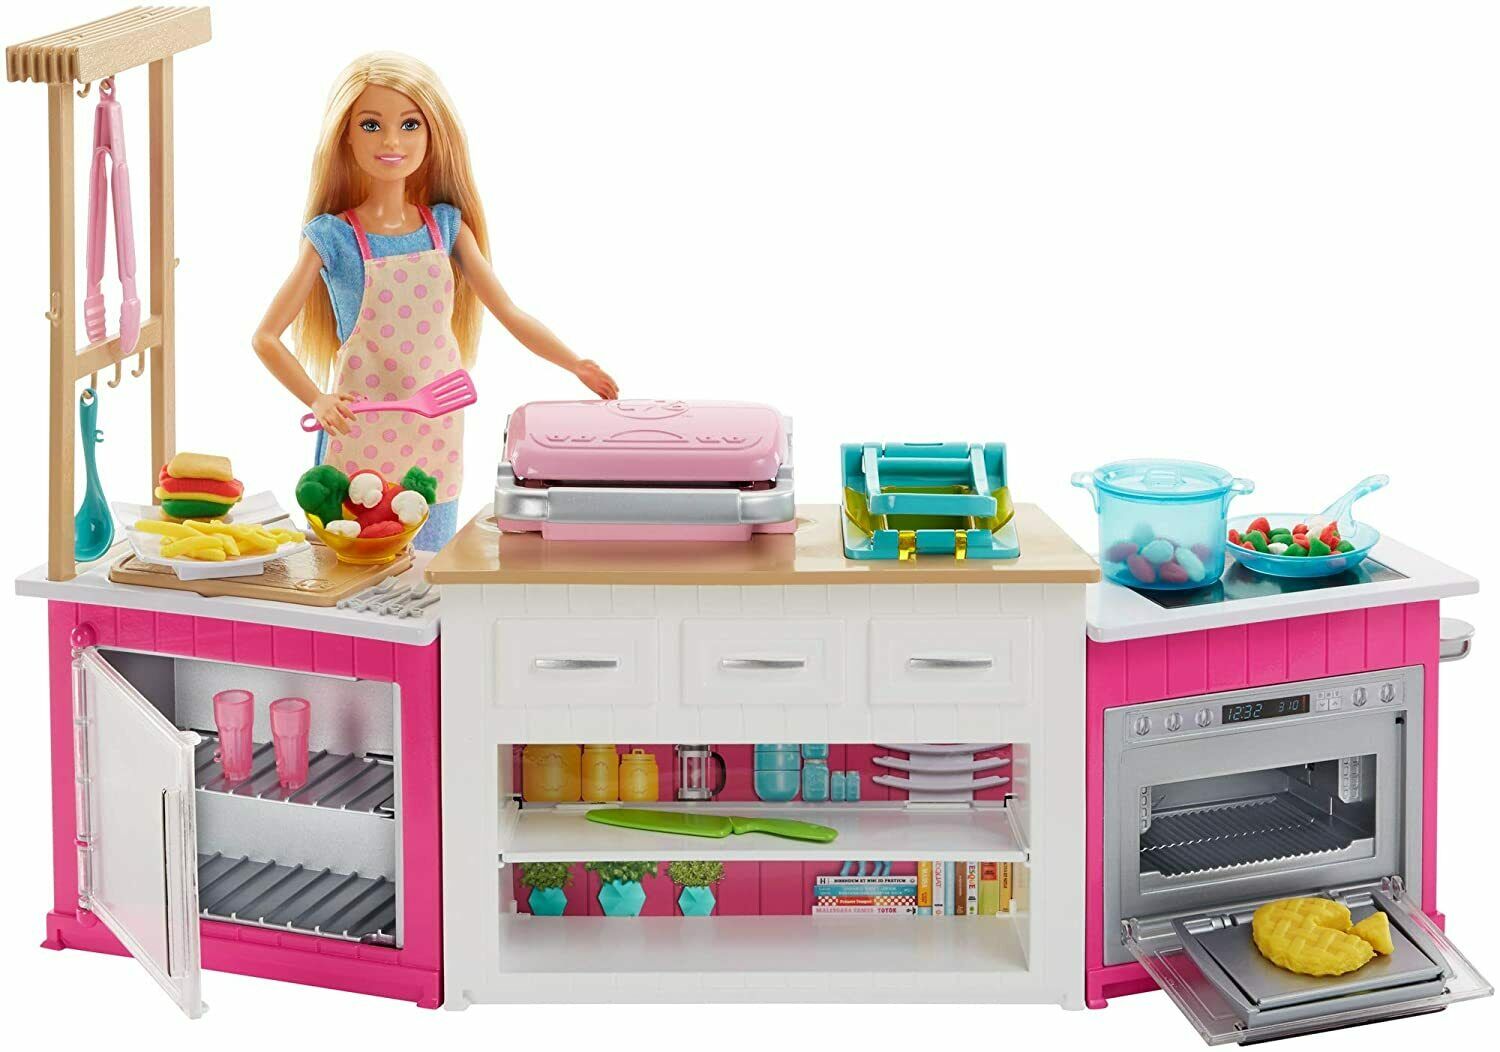 MATTEL Barbie 芭比娃娃 芭比廚房遊戲組合連娃娃